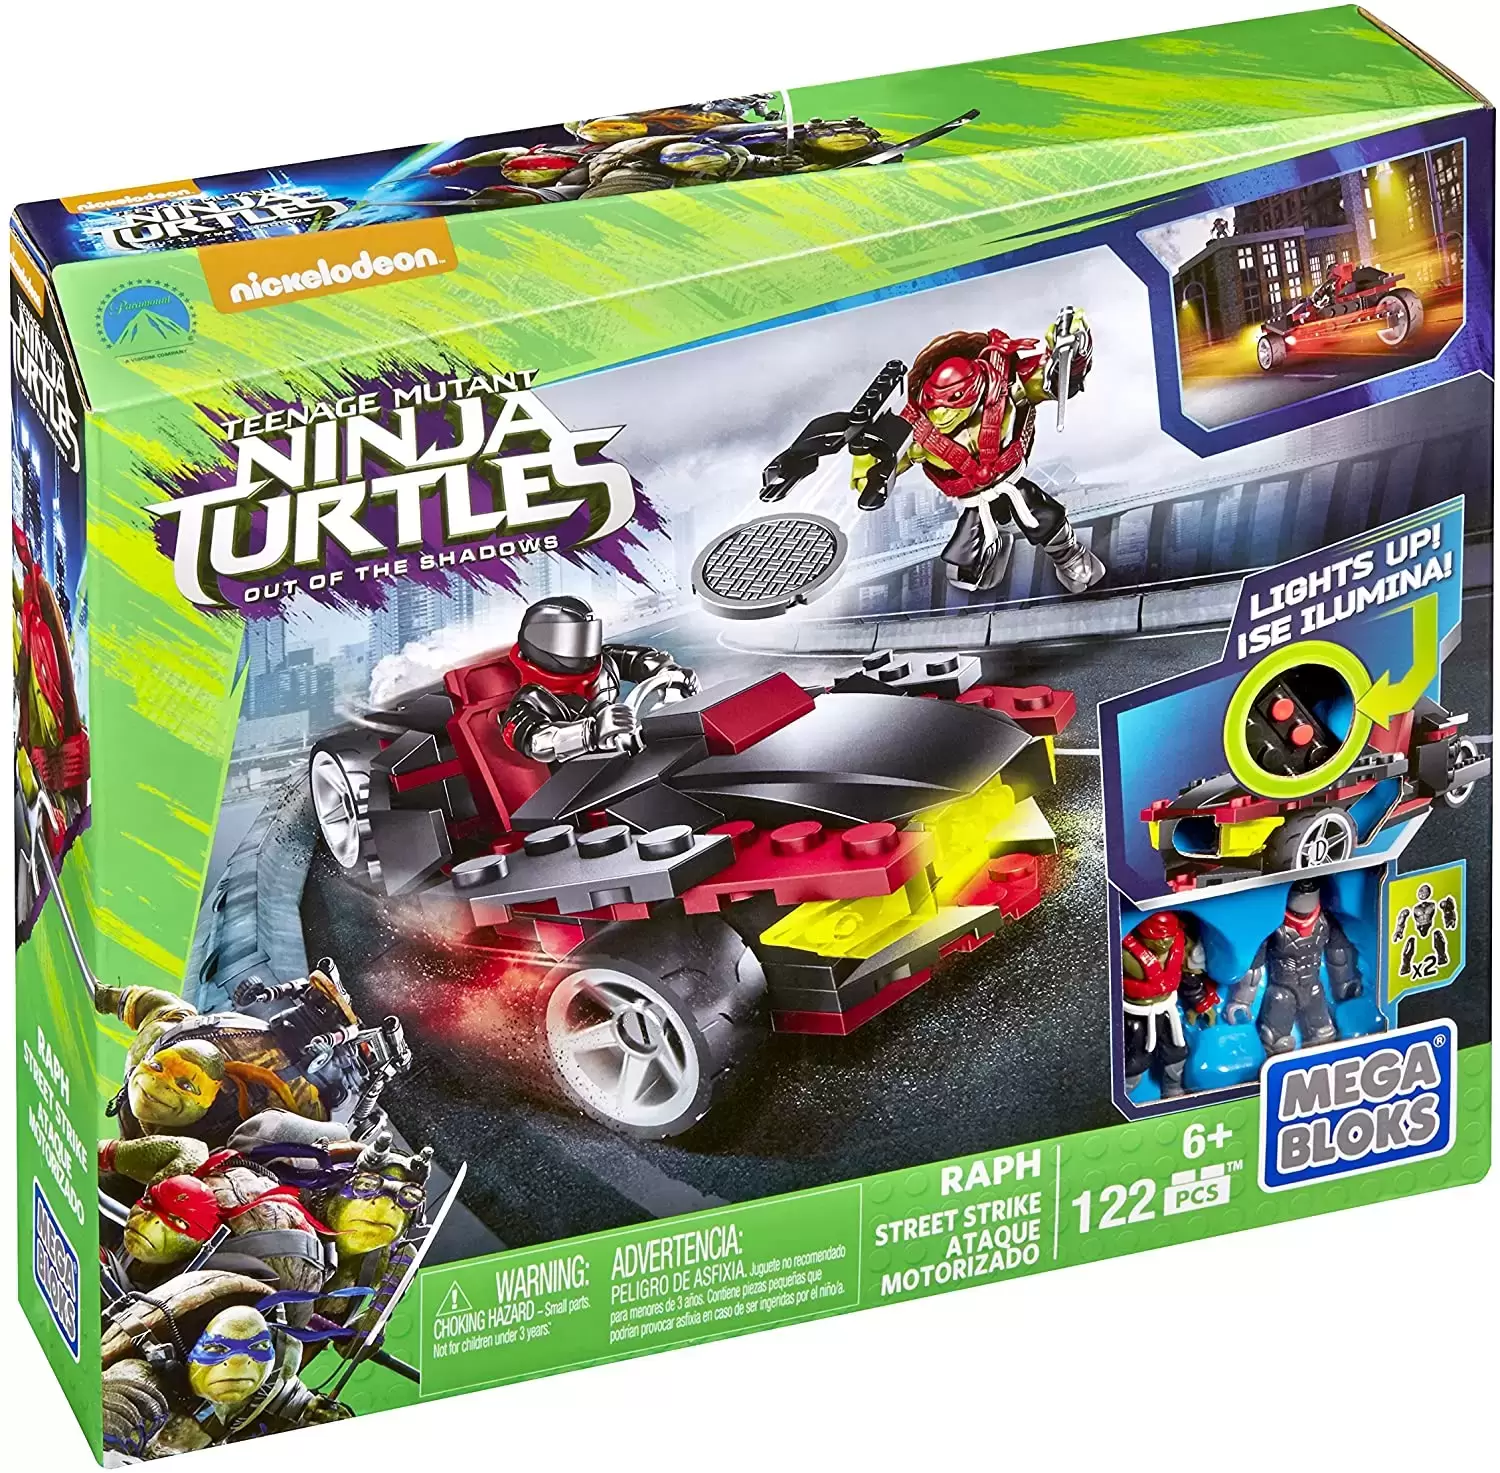 Teenage Mutant Ninja Turtles Mega Bloks - Raph Street Strike